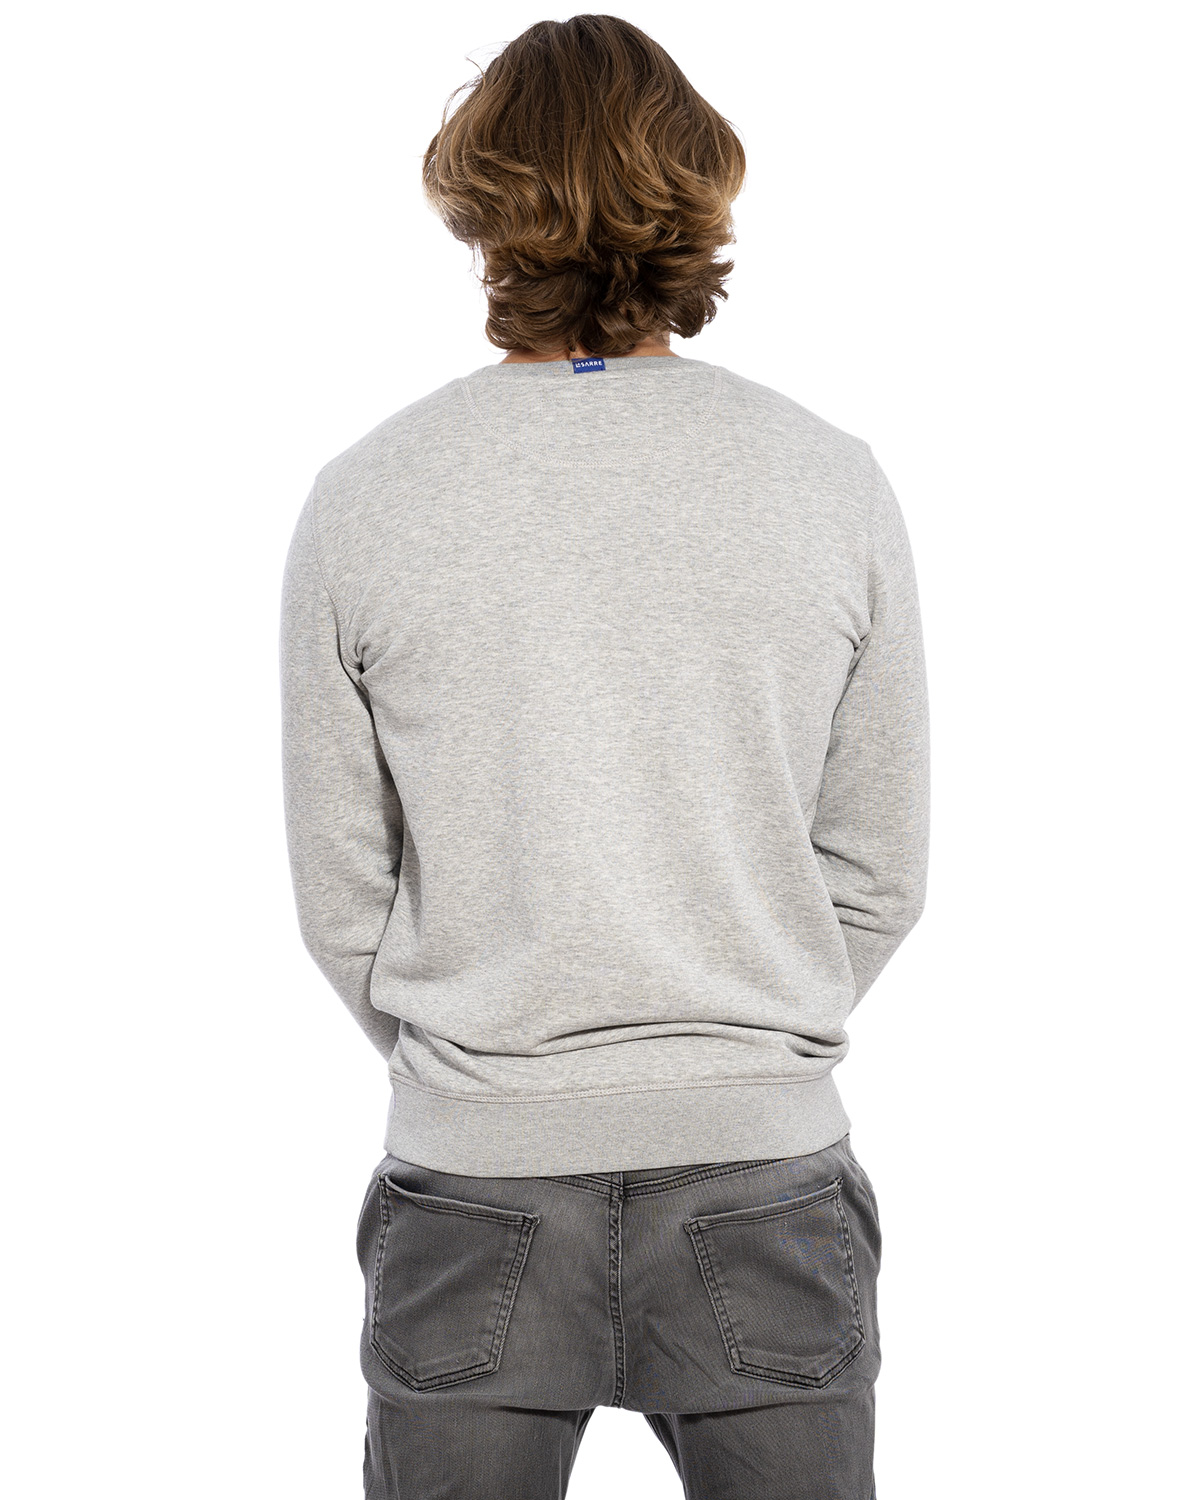 Rücken-Ansicht des hochwertig bestickten dünnen Männer Sweatshirt „ANTON“ in Asch-Grau von der Saarland Marke Lasarre mit dem LASARRE Wappen in Blau, Weiß, Rot von auf der linken Brust und dem blauen LASARRE Markenzeichen am Saum